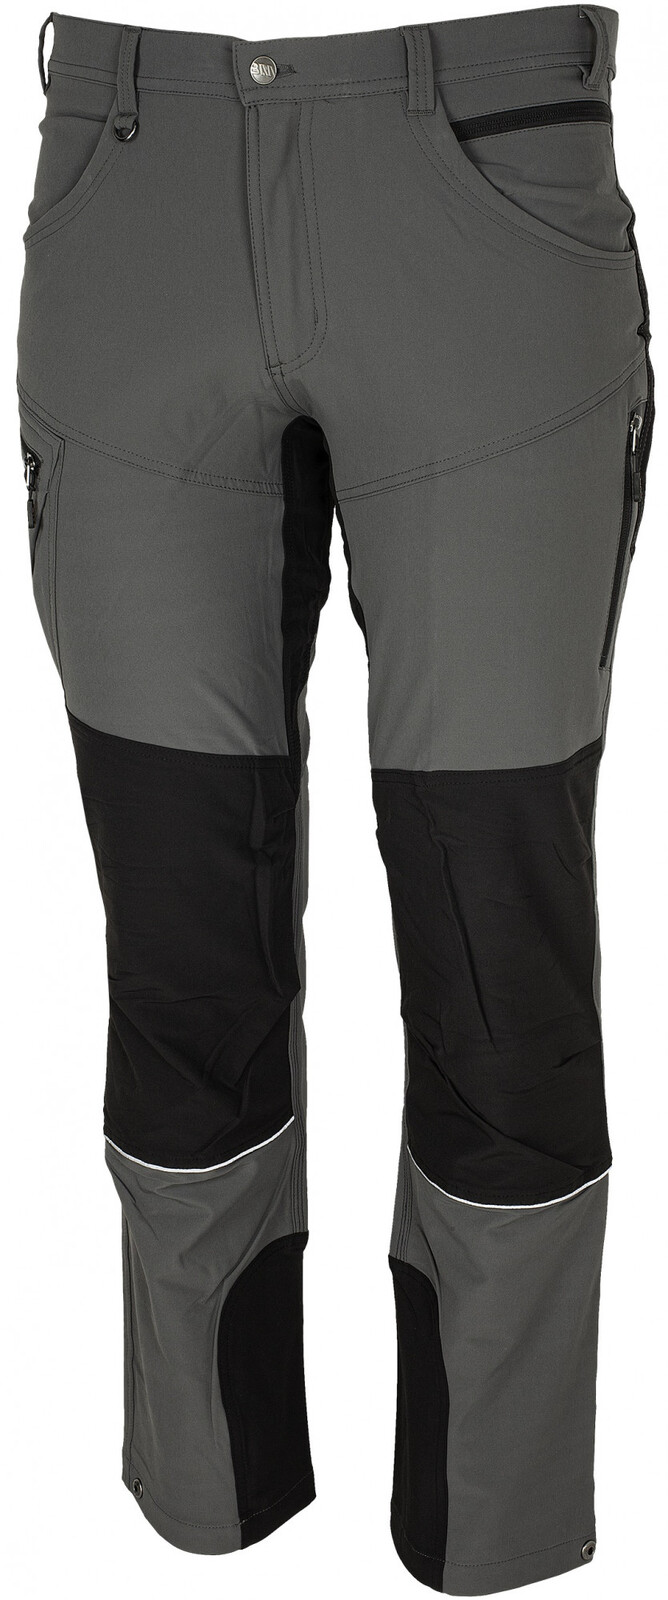 Pánske strečové nohavice Bennon Fobos - veľkosť: 44, farba: sivá/čierna